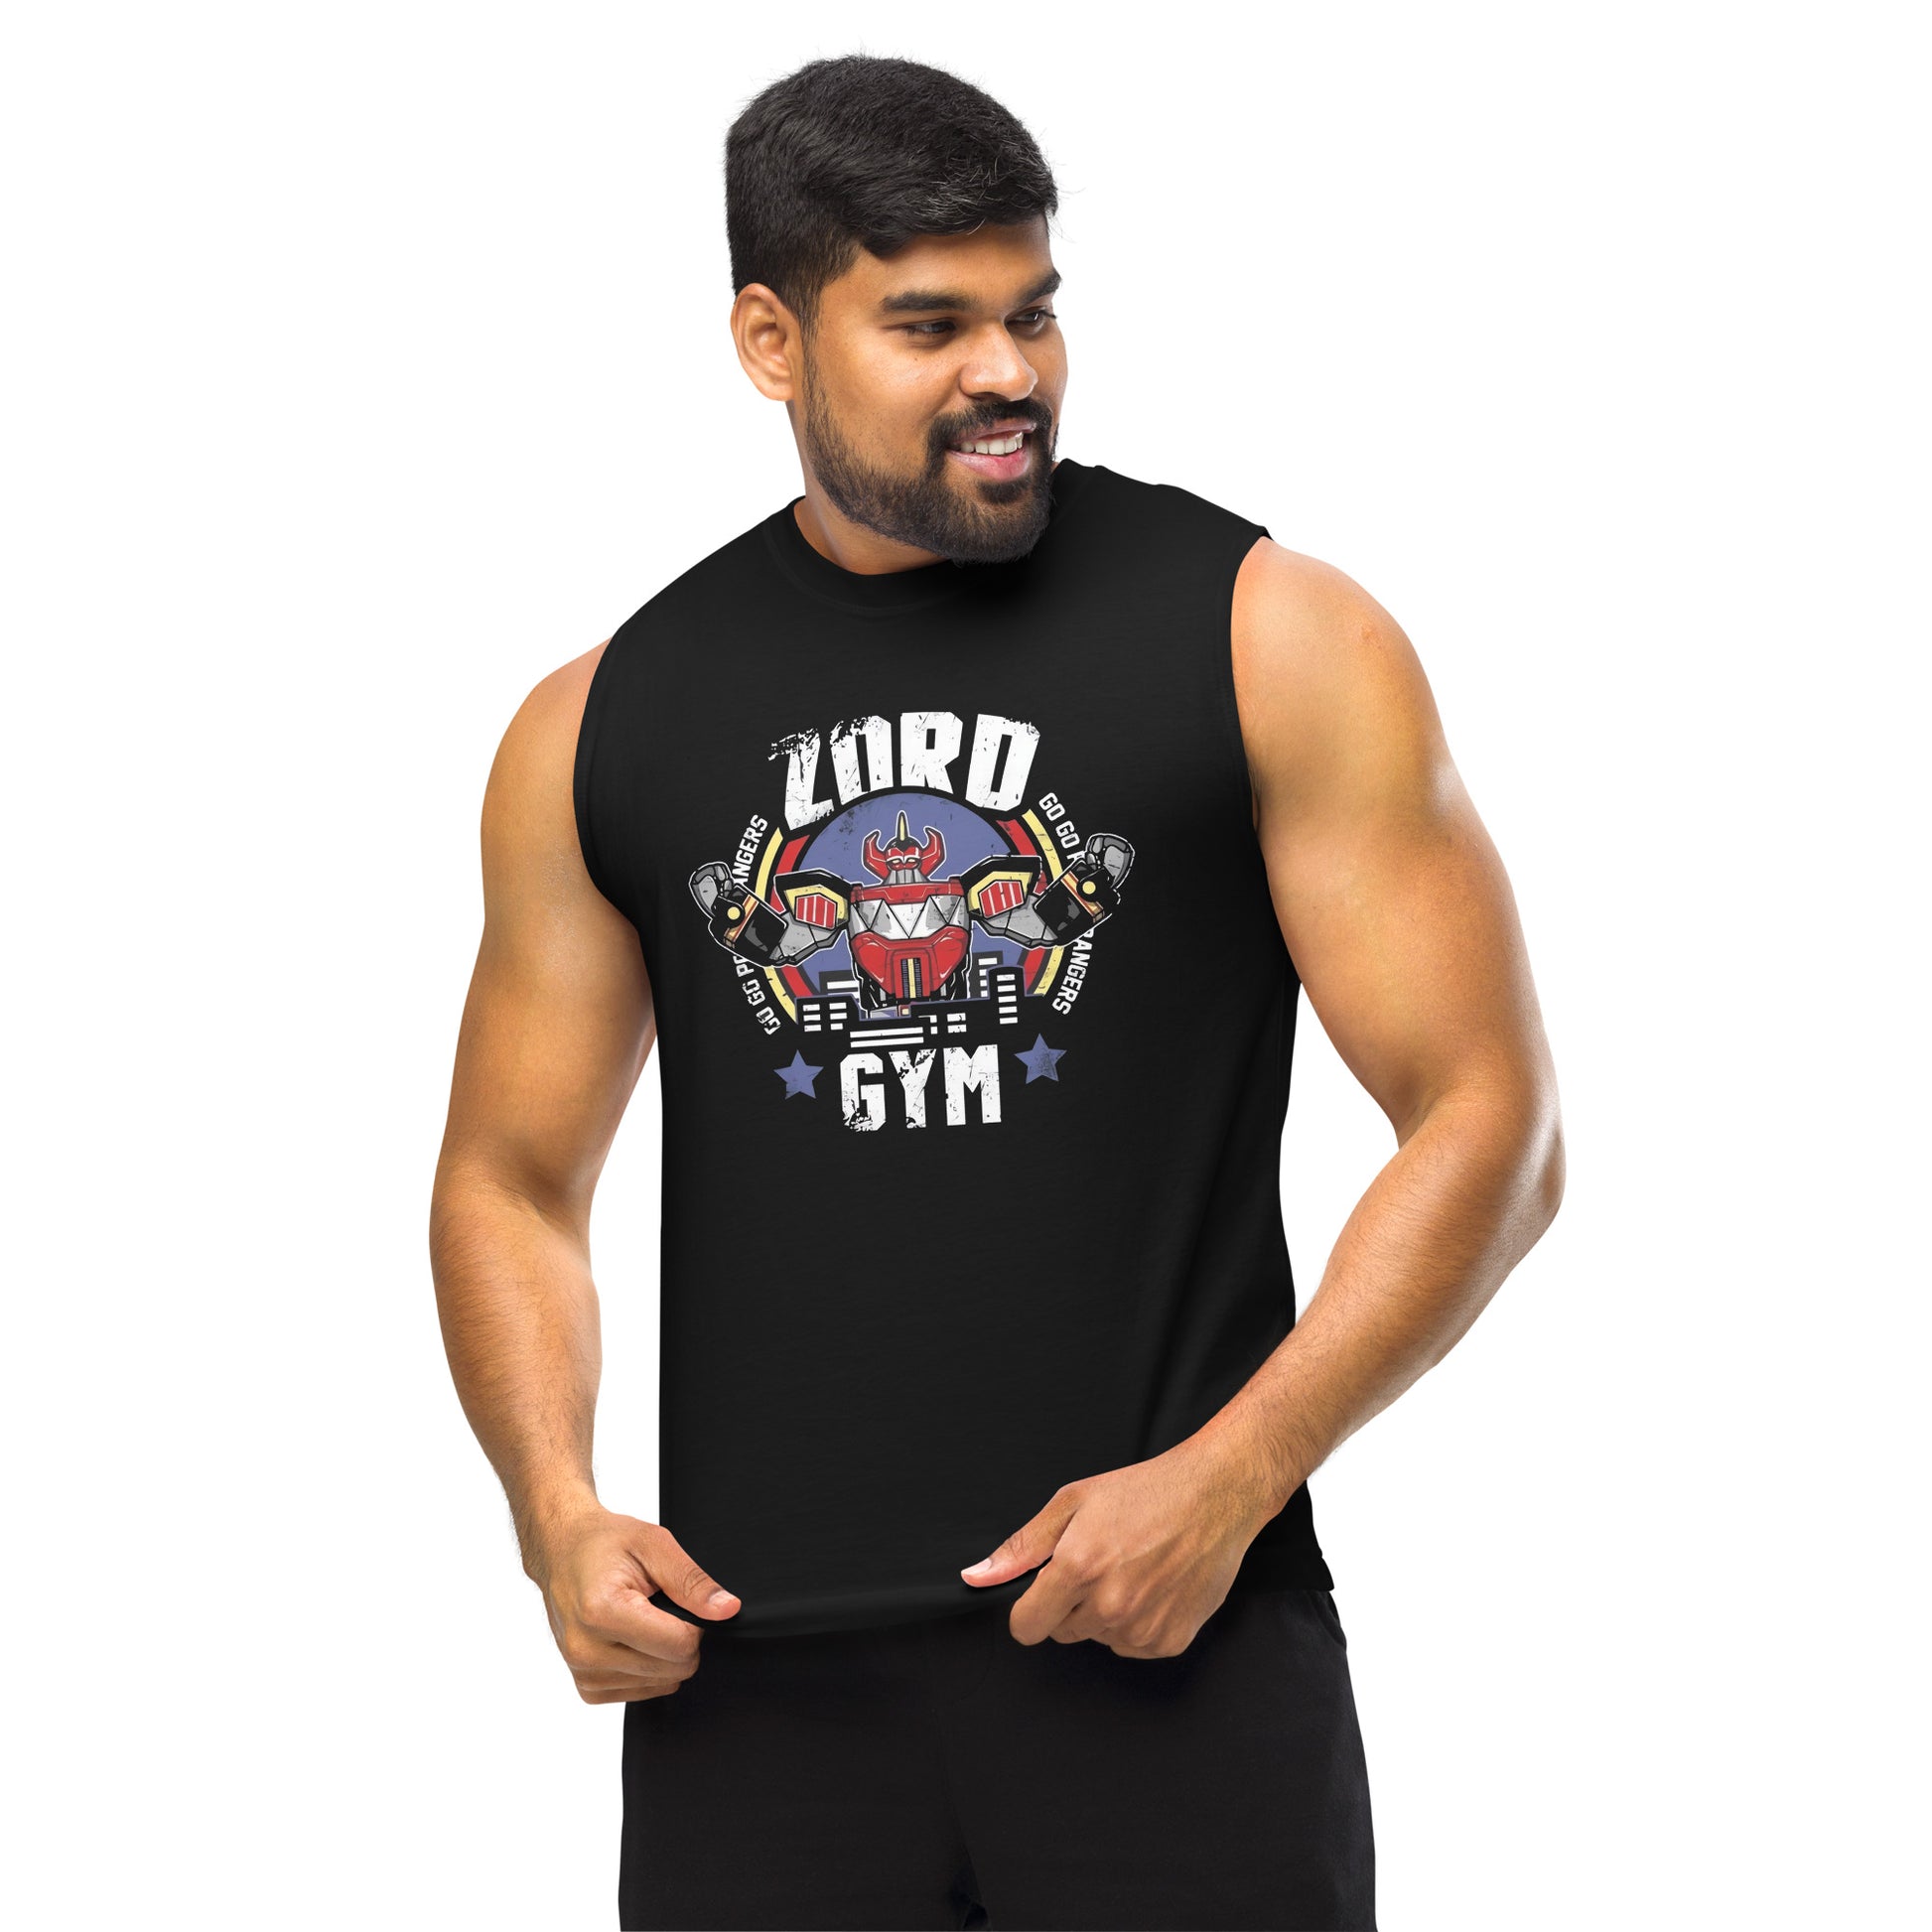 Camiseta sin mangas perfecta para entrenar, Camiseta Zord Gym comprala en línea y experimenta el mejor servicio al cliente. envíos internacionales.